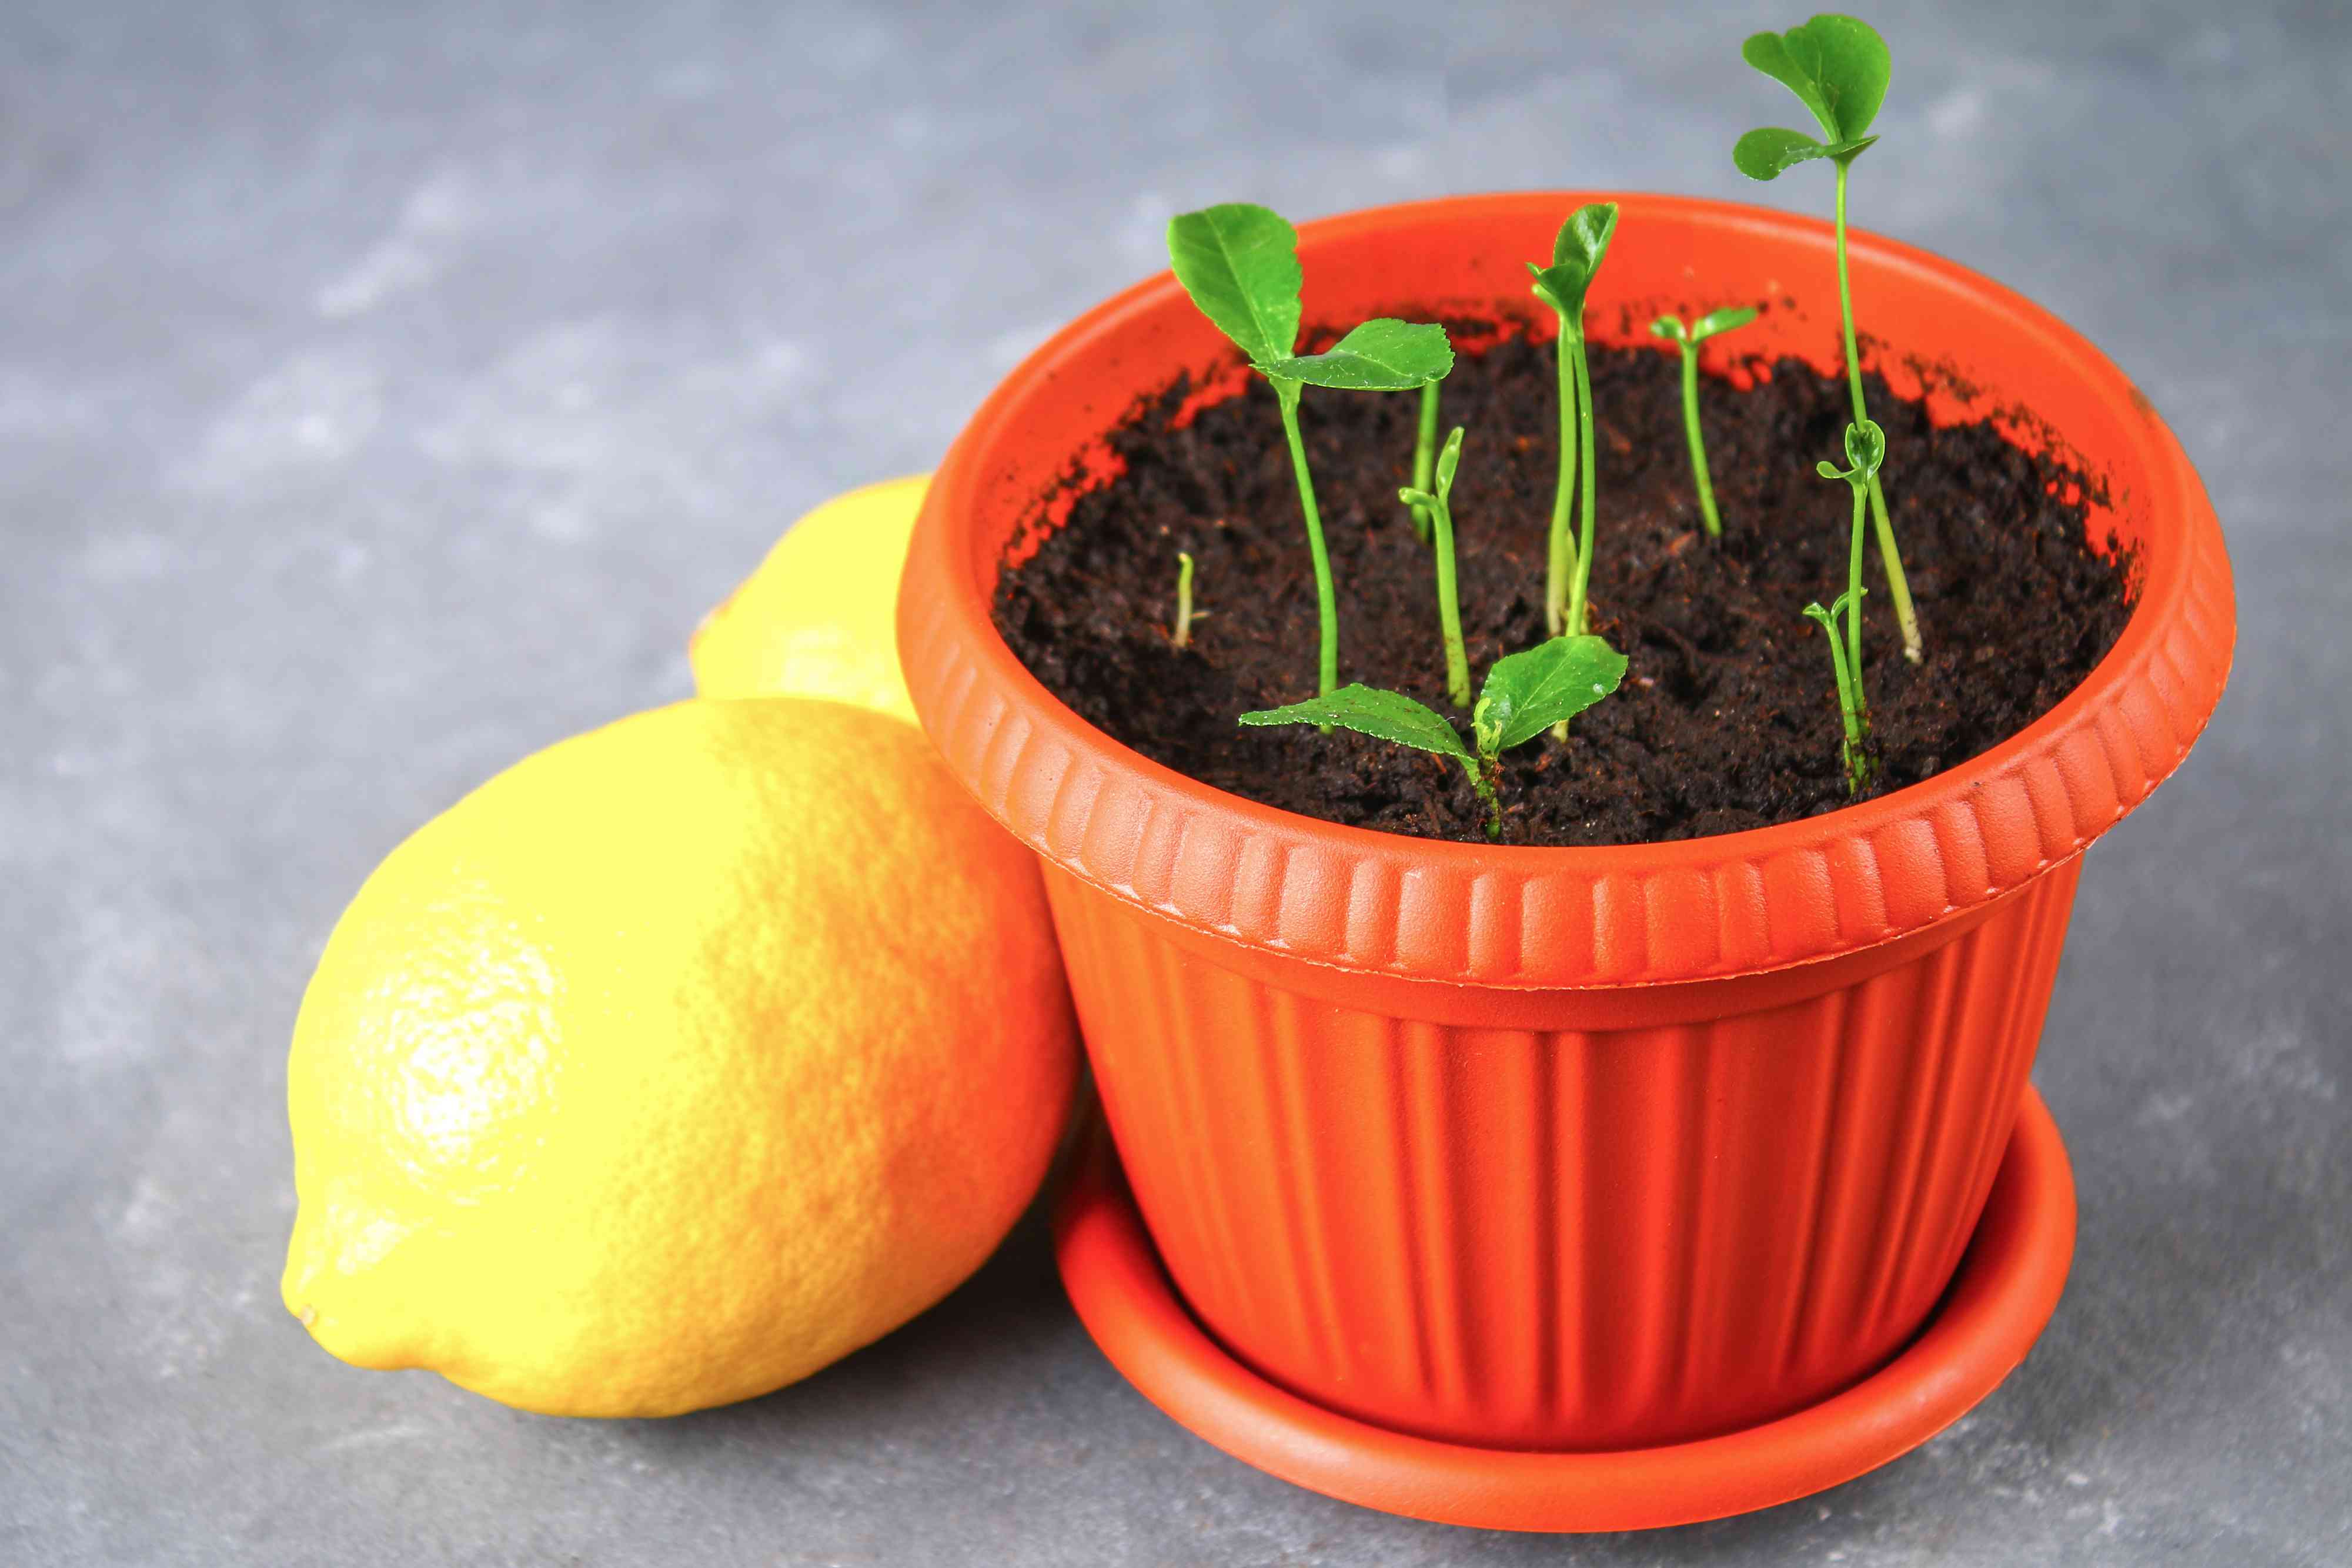 How To Plant A Lemon Seed